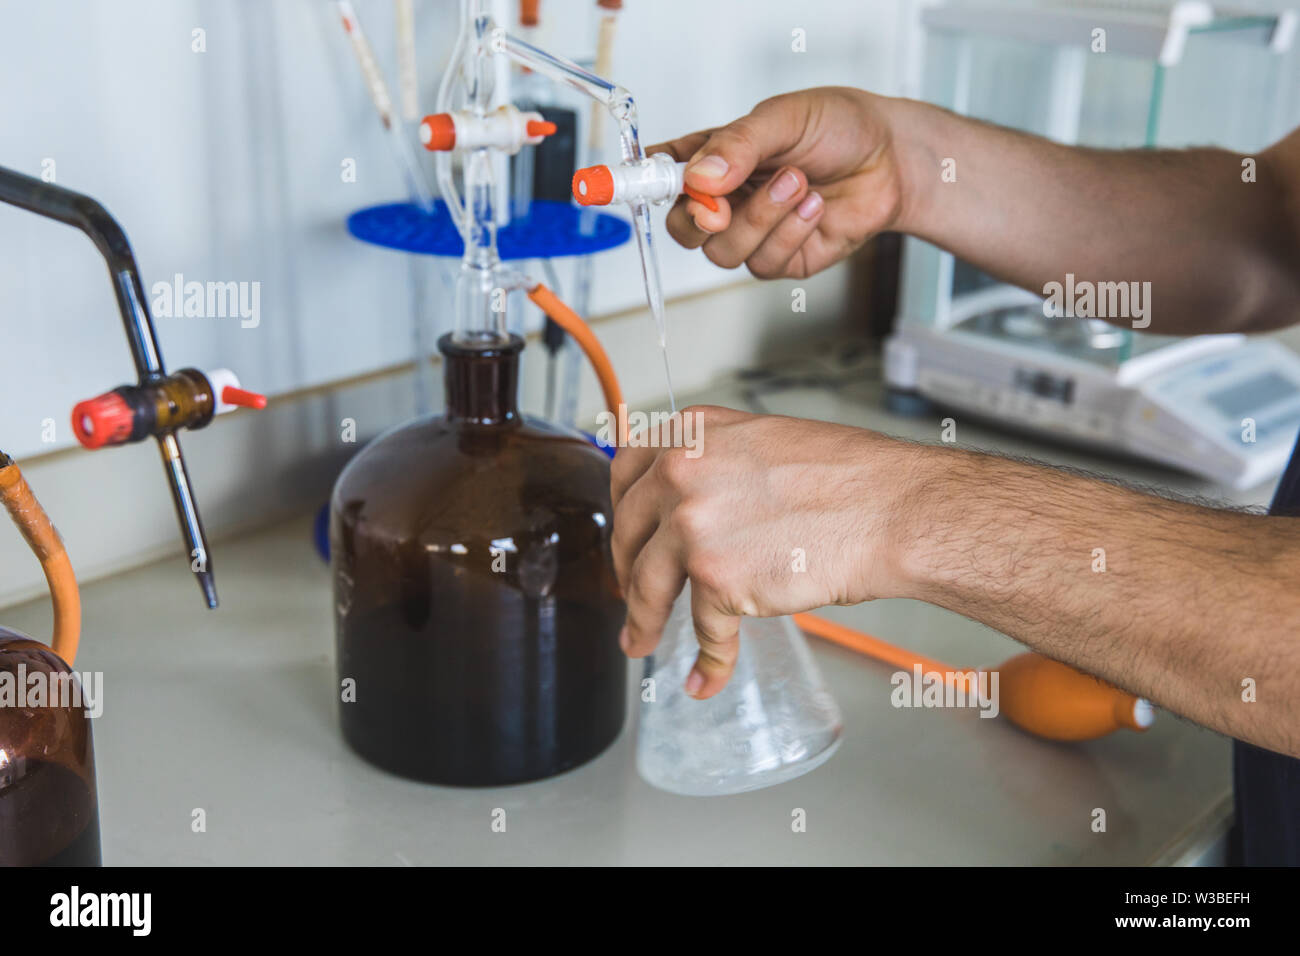 Mann oder Mann halten Reagenzglas in der Hand produziert Chemie experiment Test und Forschung in der modernen Chemie Labor. Stockfoto